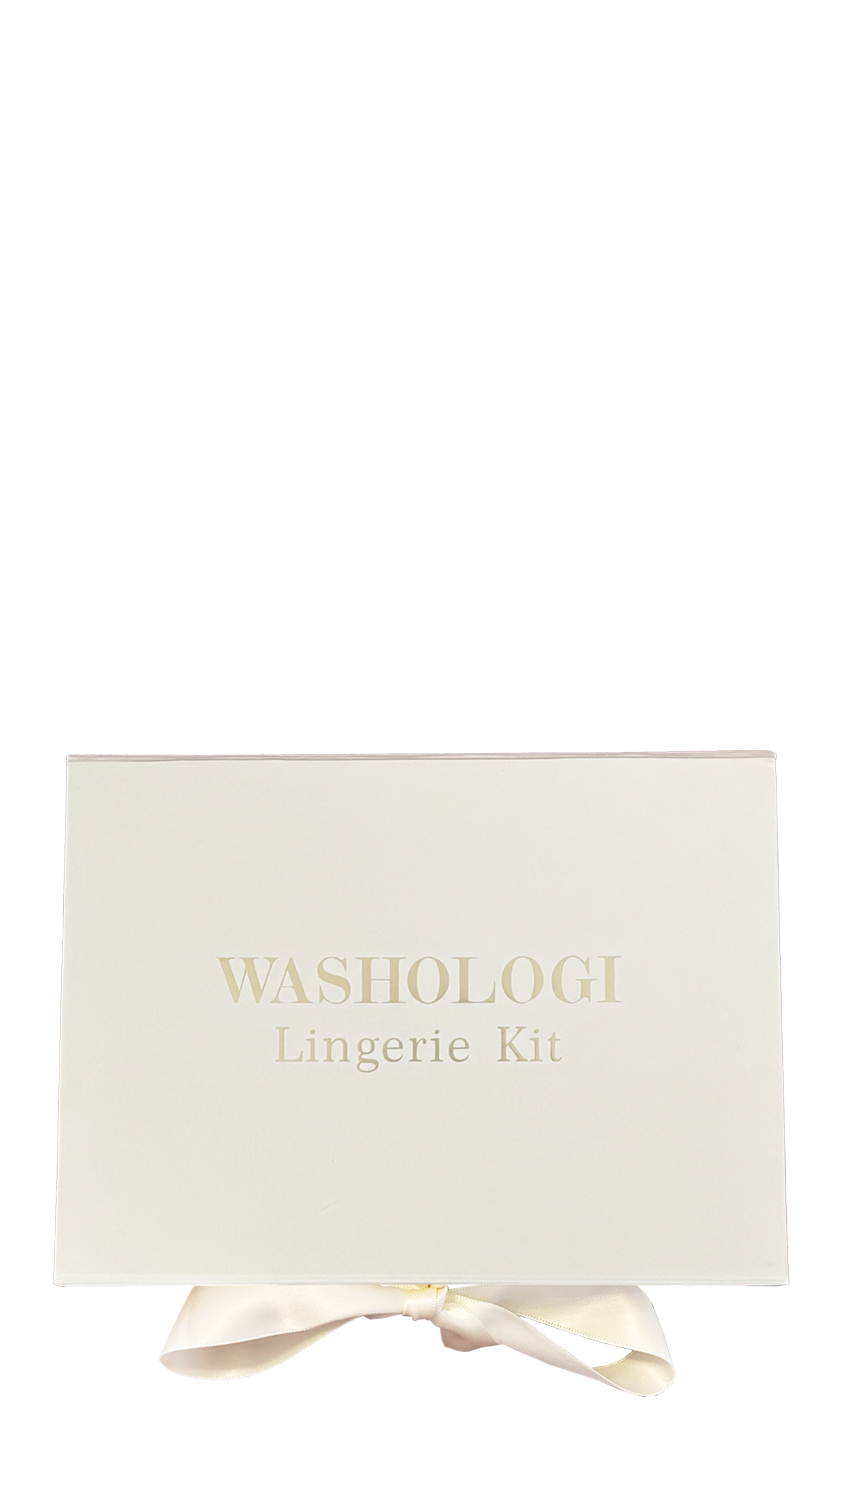 Lingerie Kit